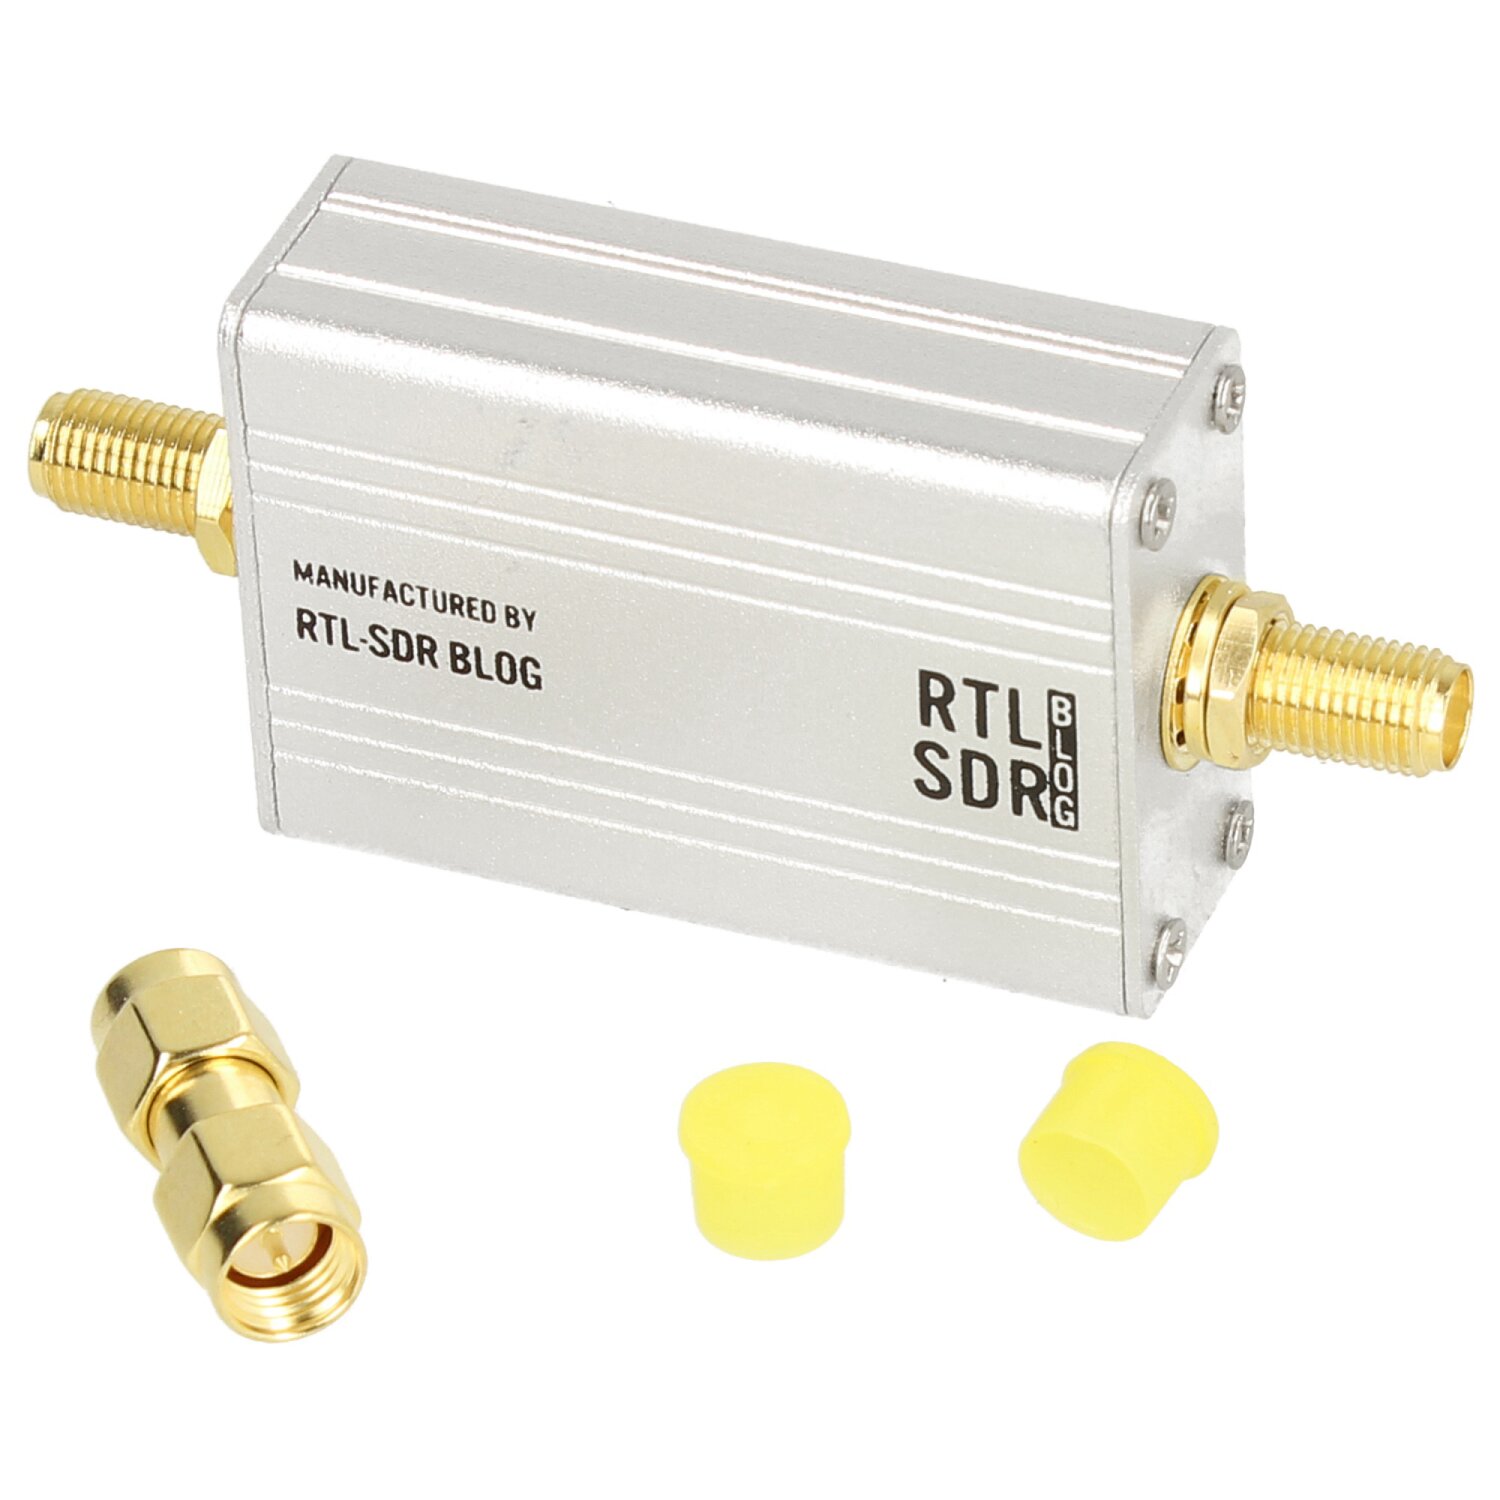 RTL-SDR - LNA-Modul (Ultra-Low Noise Amplifier) für Funk und SDR mit Gehäuse + Zubehör mit Bias-Tee & USB Power Optionen